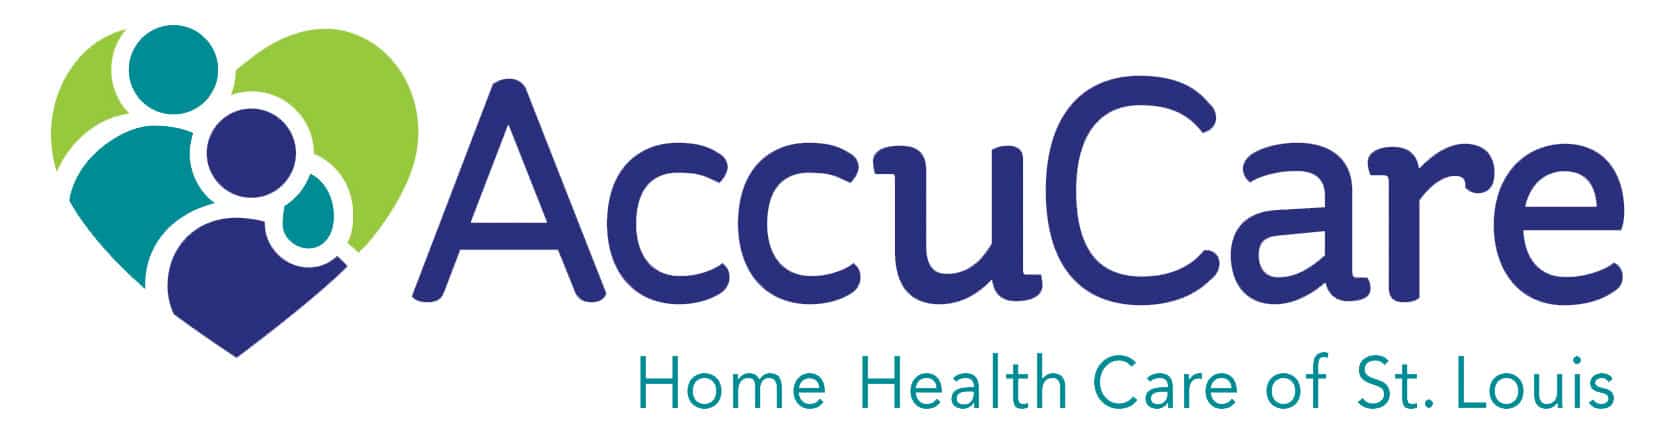 AccuCare Home Health Care